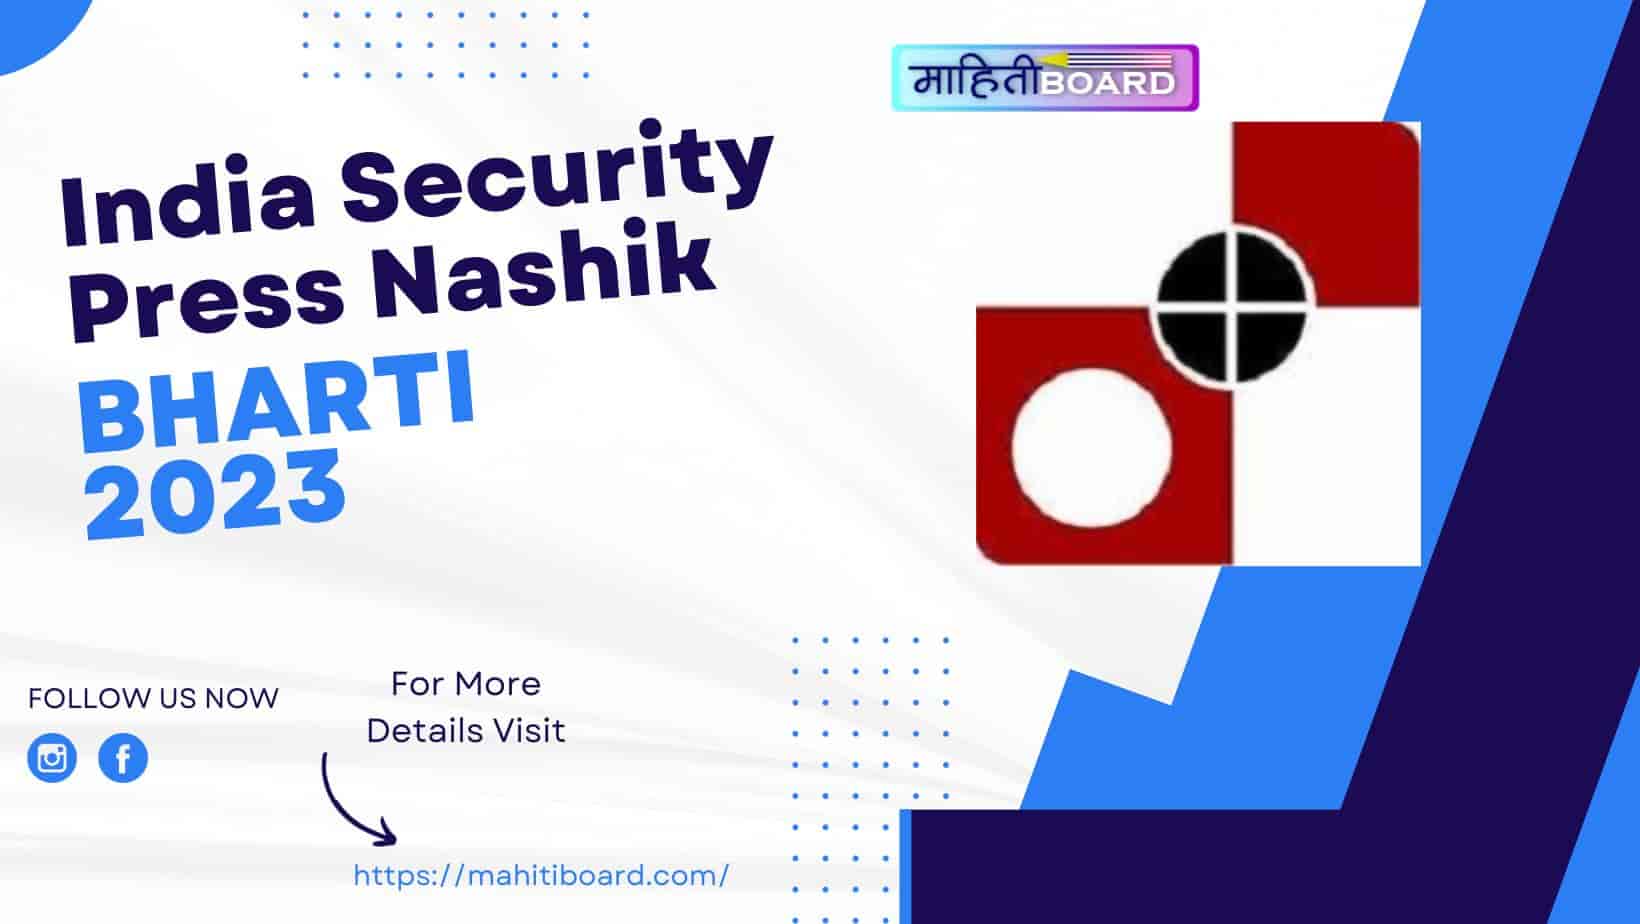 India Security Press Nashik Bharti 2023